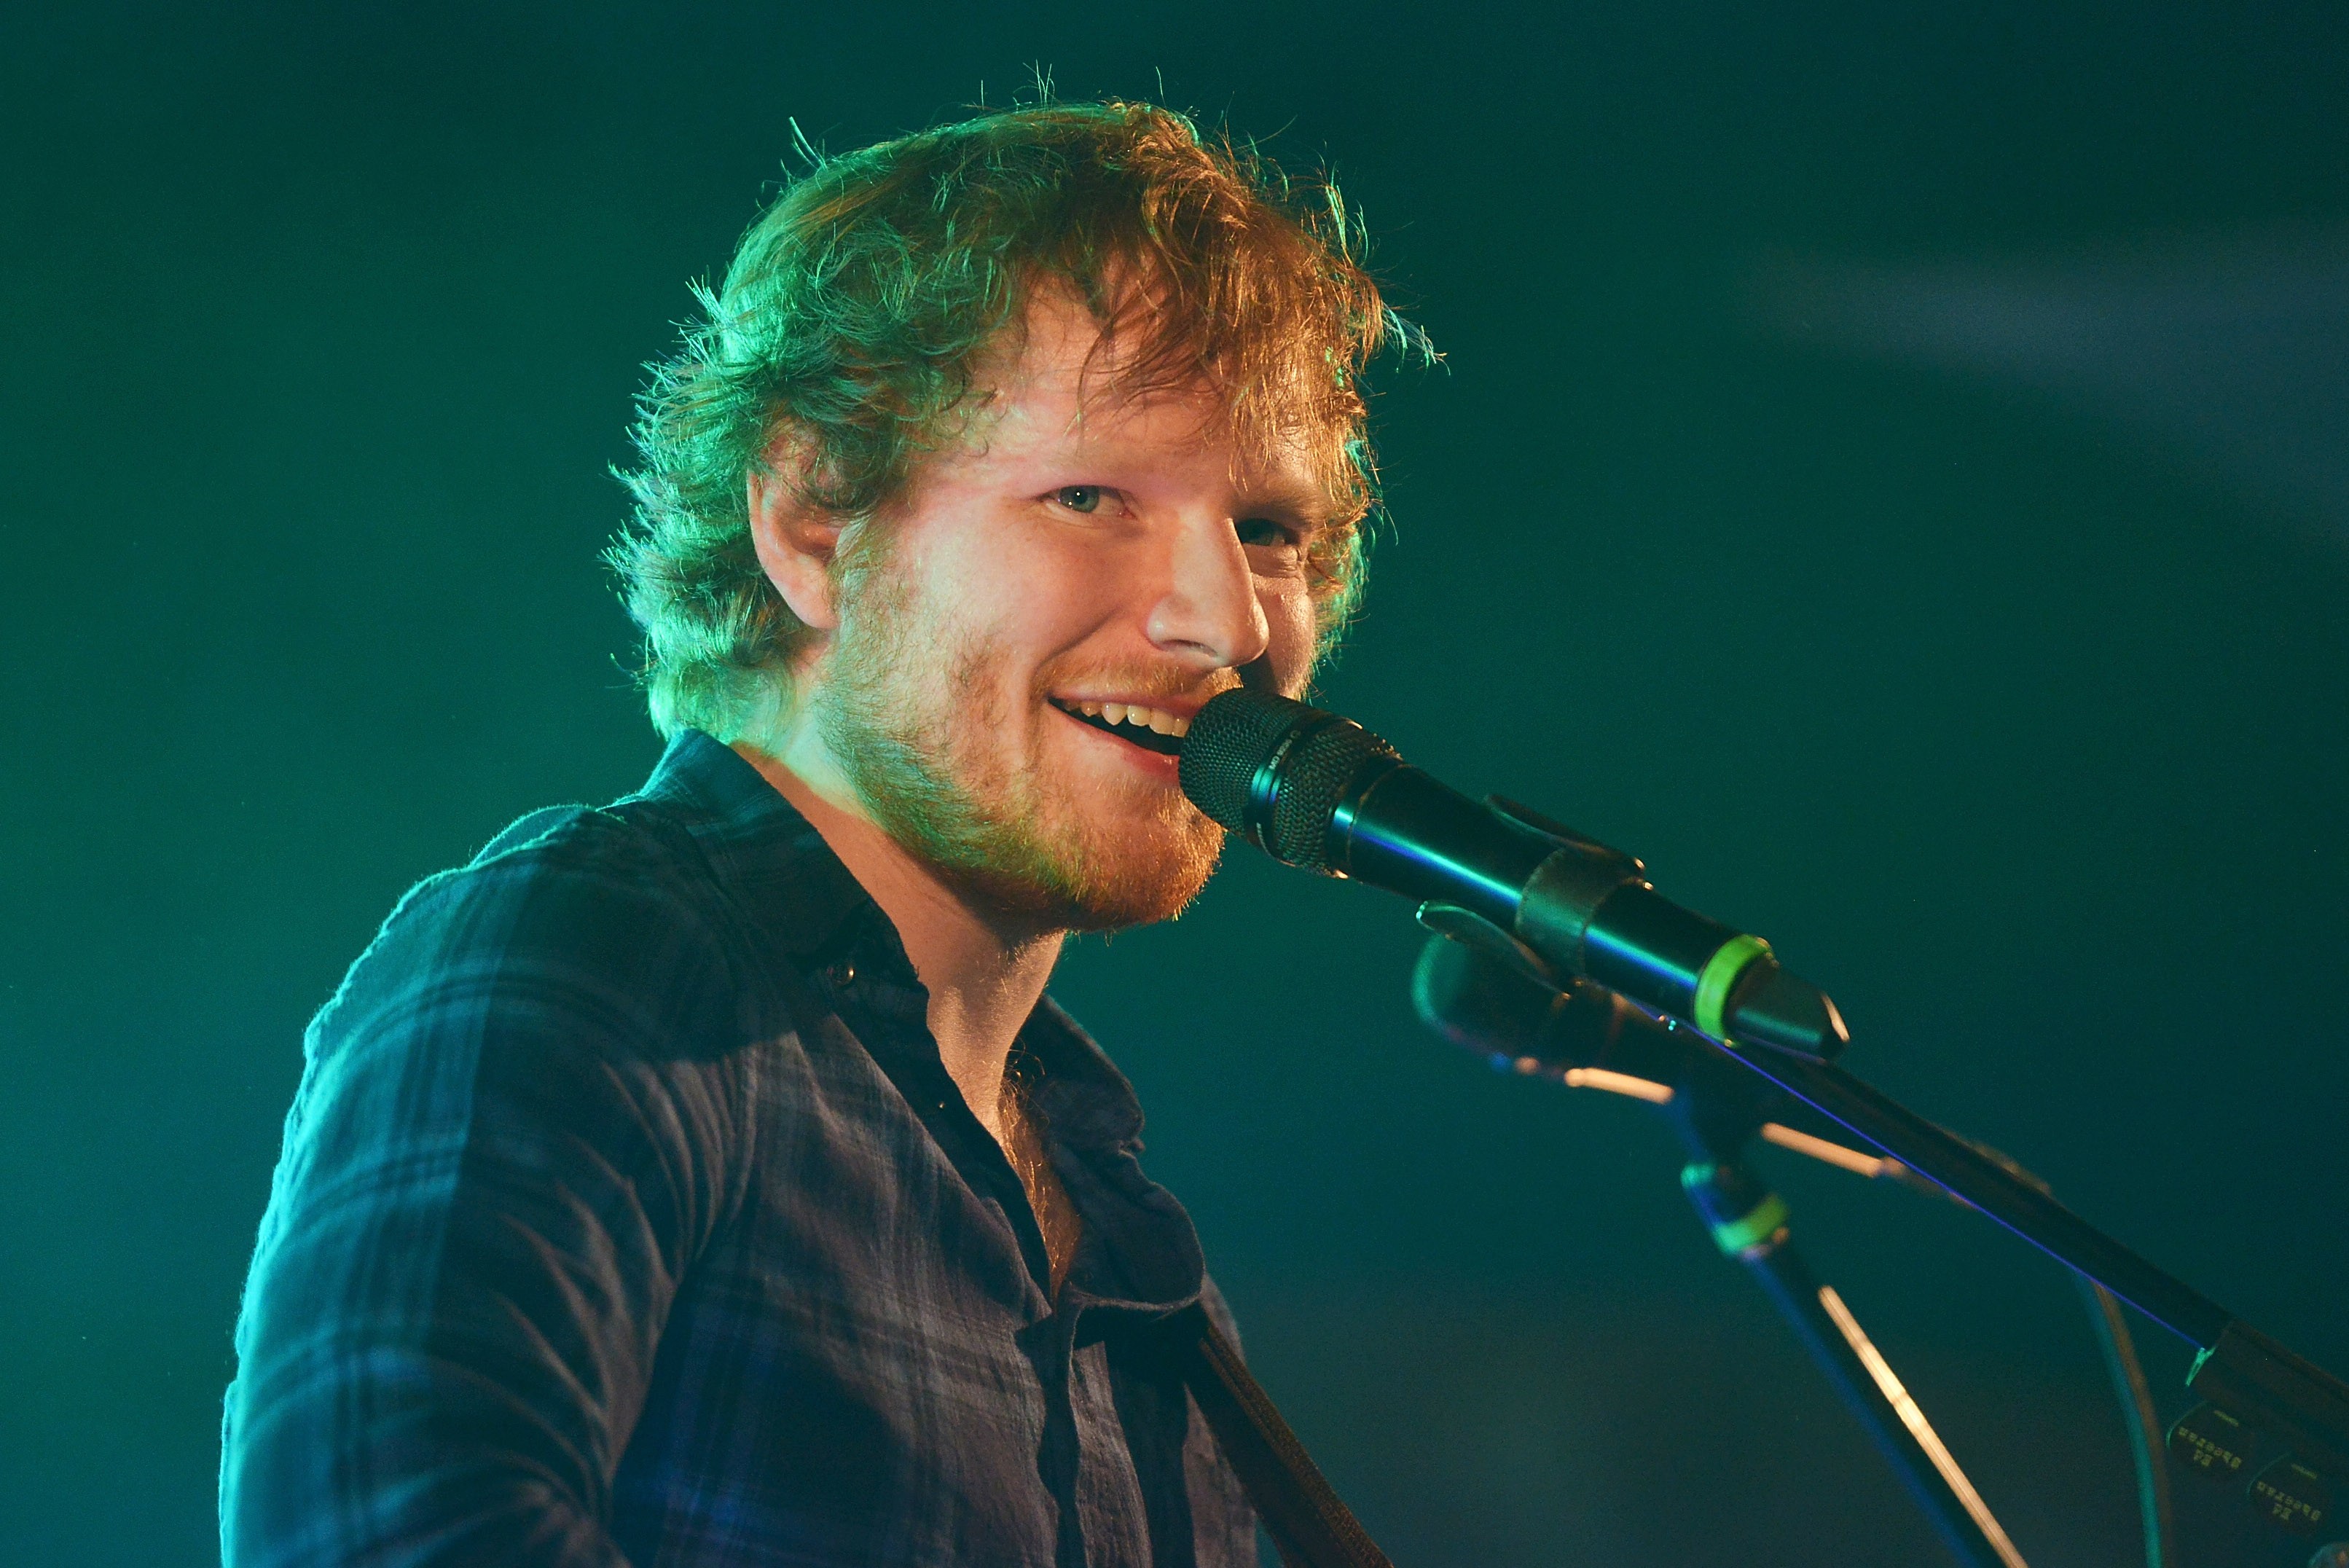 Ed Sheeran sugeriu, nesta segunda-feira (17), que está próximo de um retorno após hiato (Foto: Dave J Hogan/Getty Images)